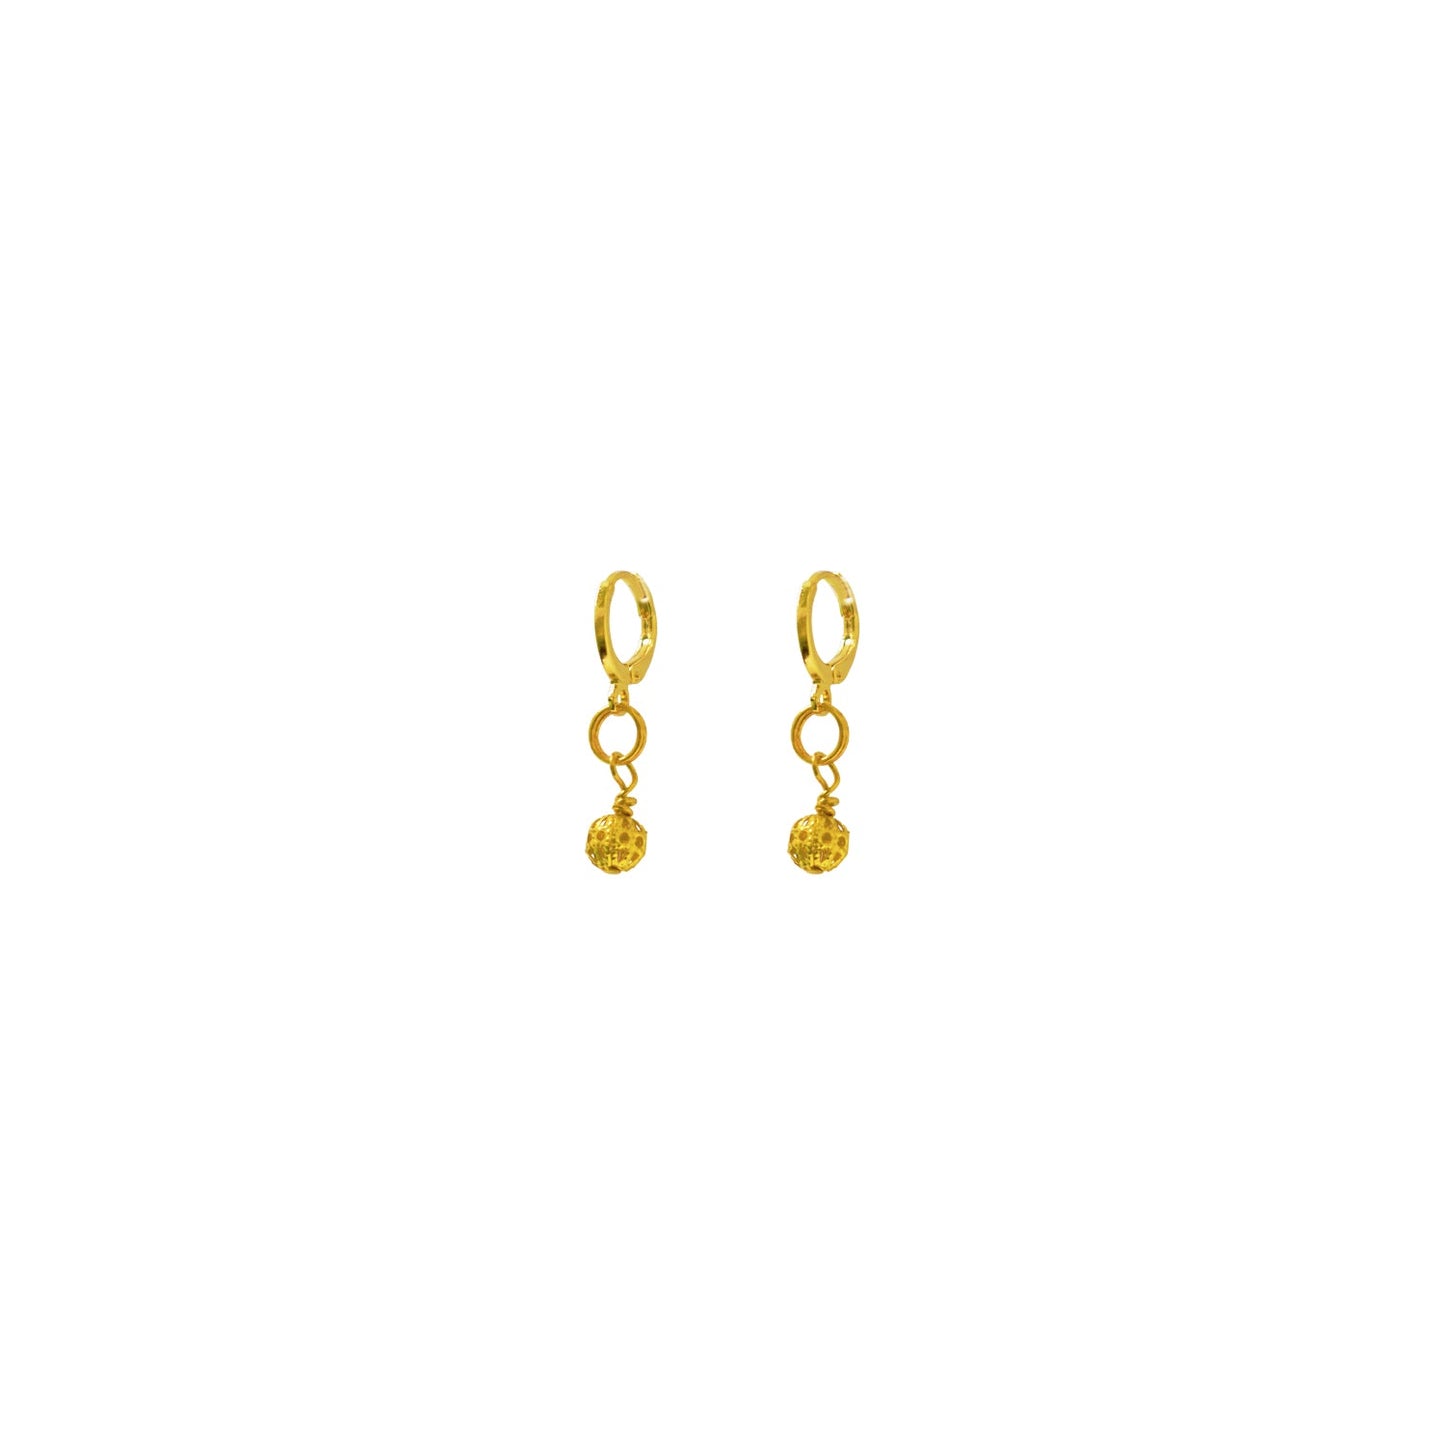 Gold Huggie Earrings, Filigree Huggie earrings, Chic Earrings, Elegant Huggie Ear Accessories | by lovedbynlanla-0